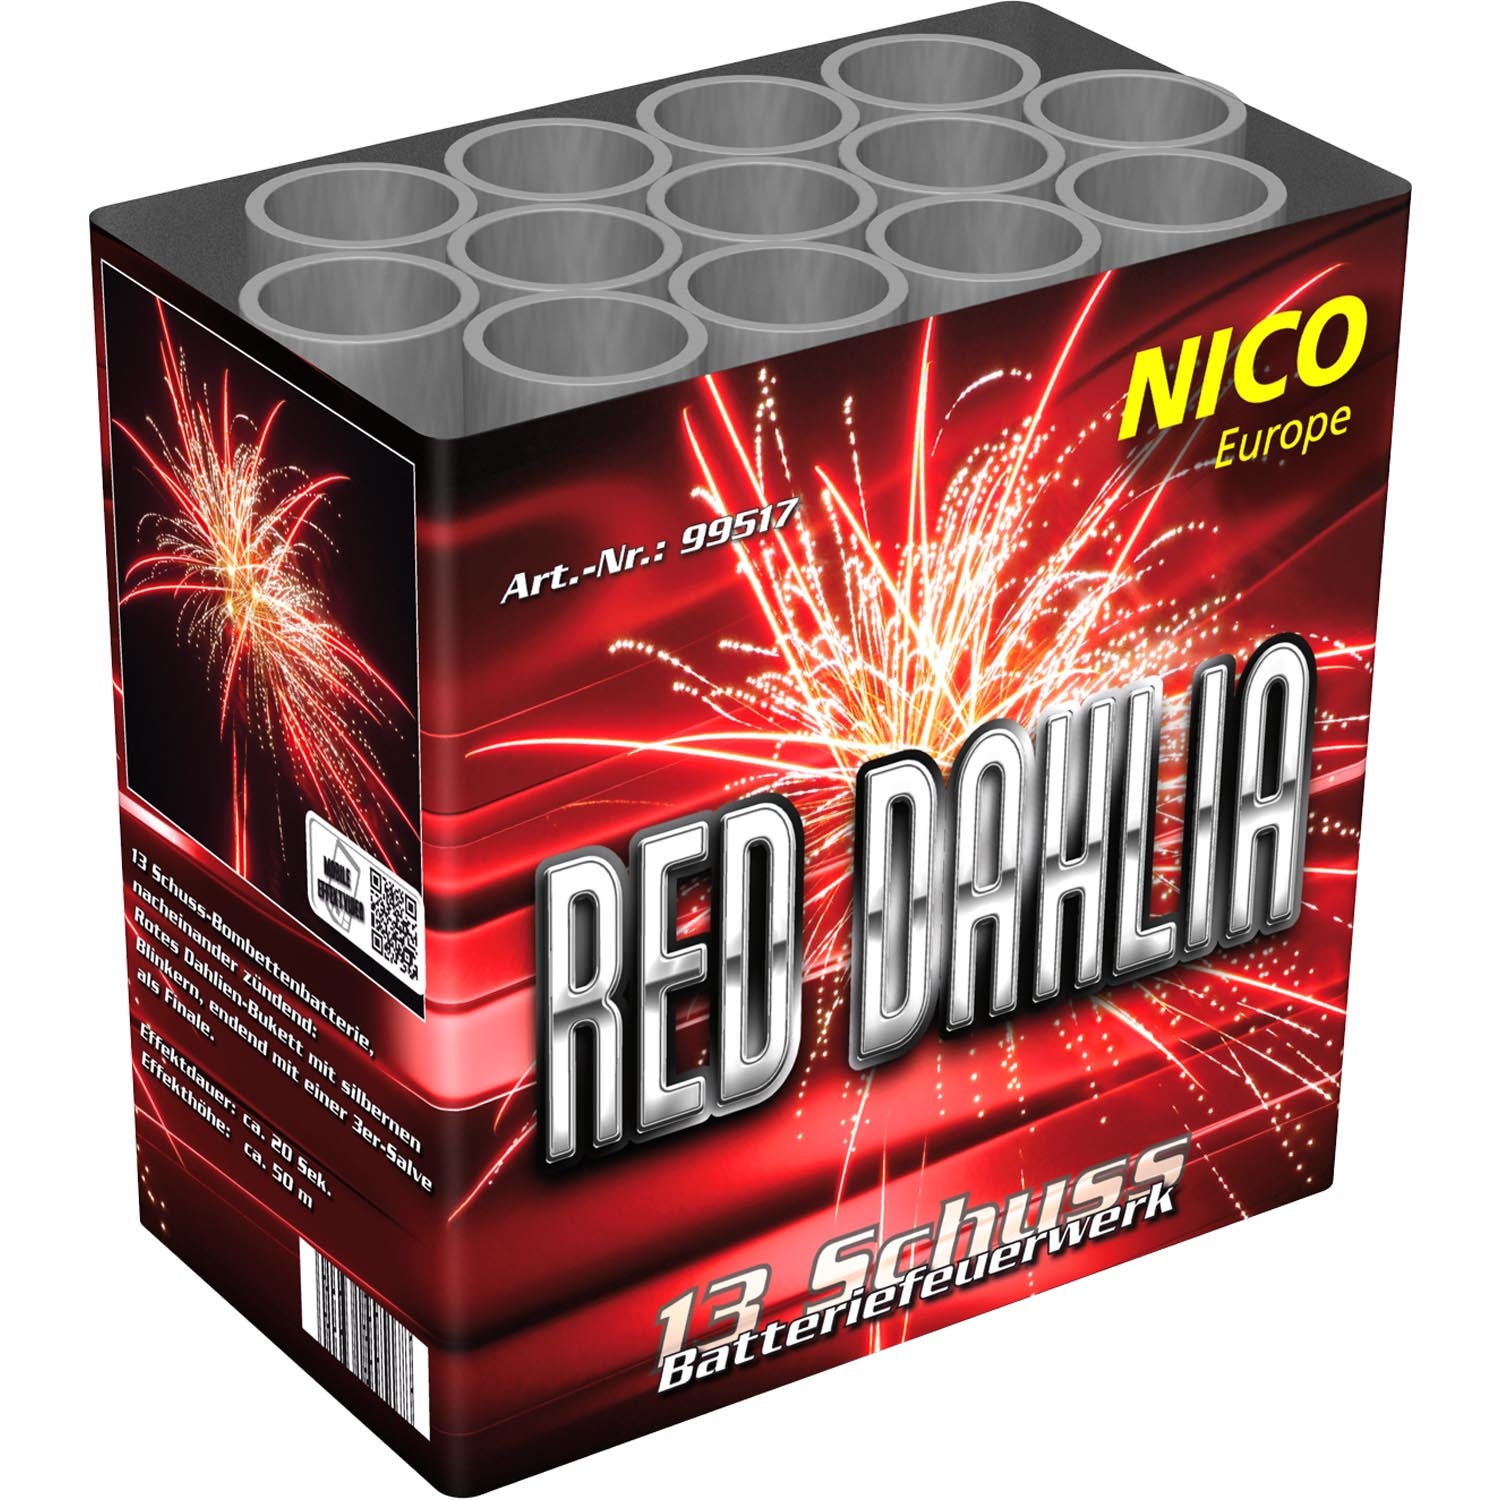 Nico Red Dahlia